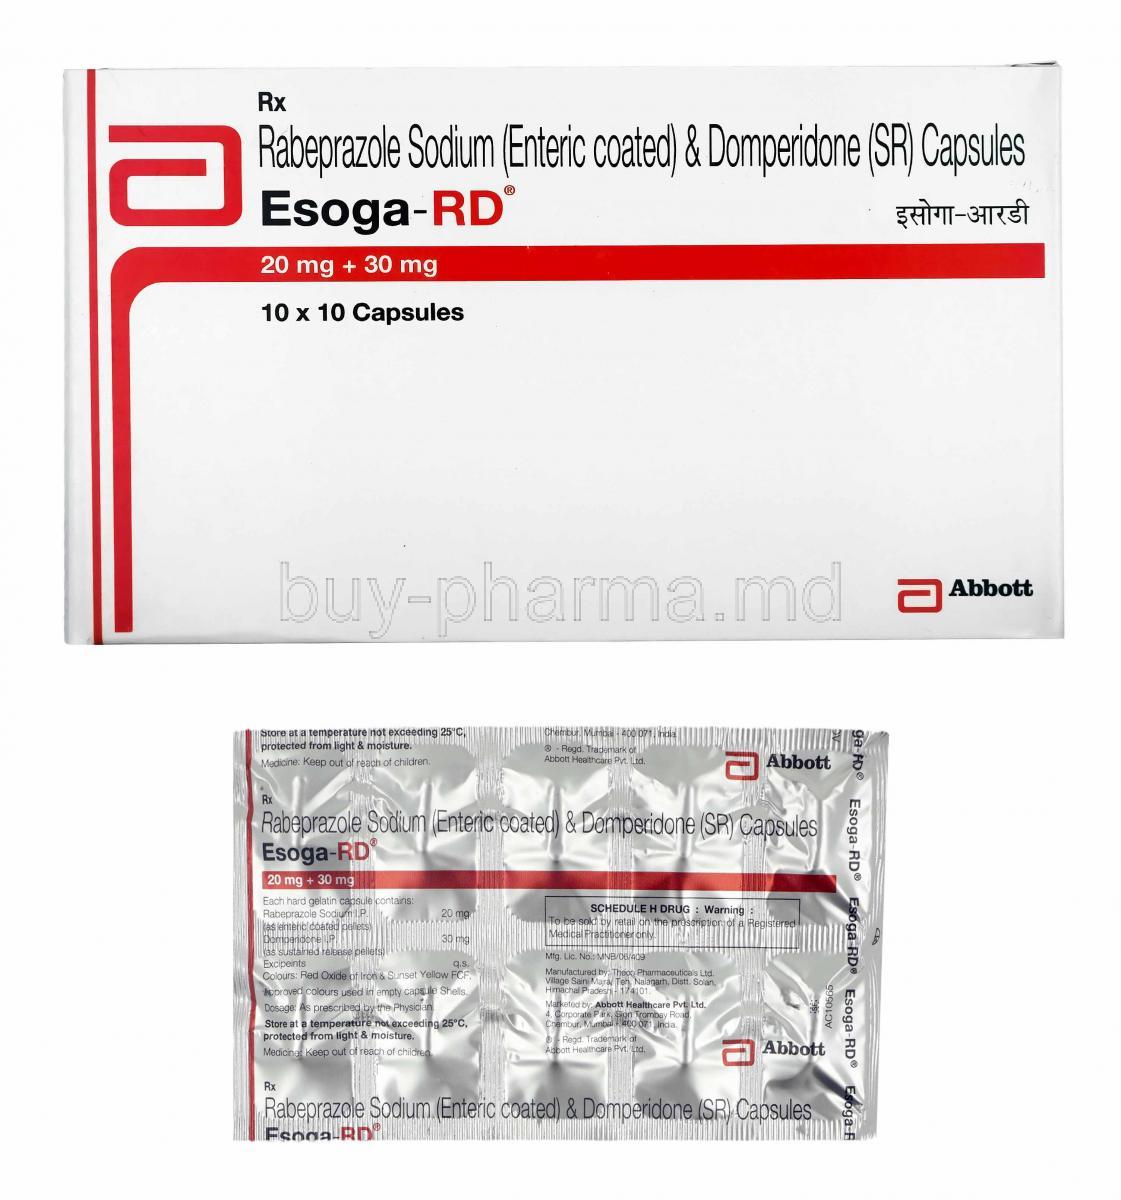 Esoga-RD, Domperidone and Rabeprazole box and capsules